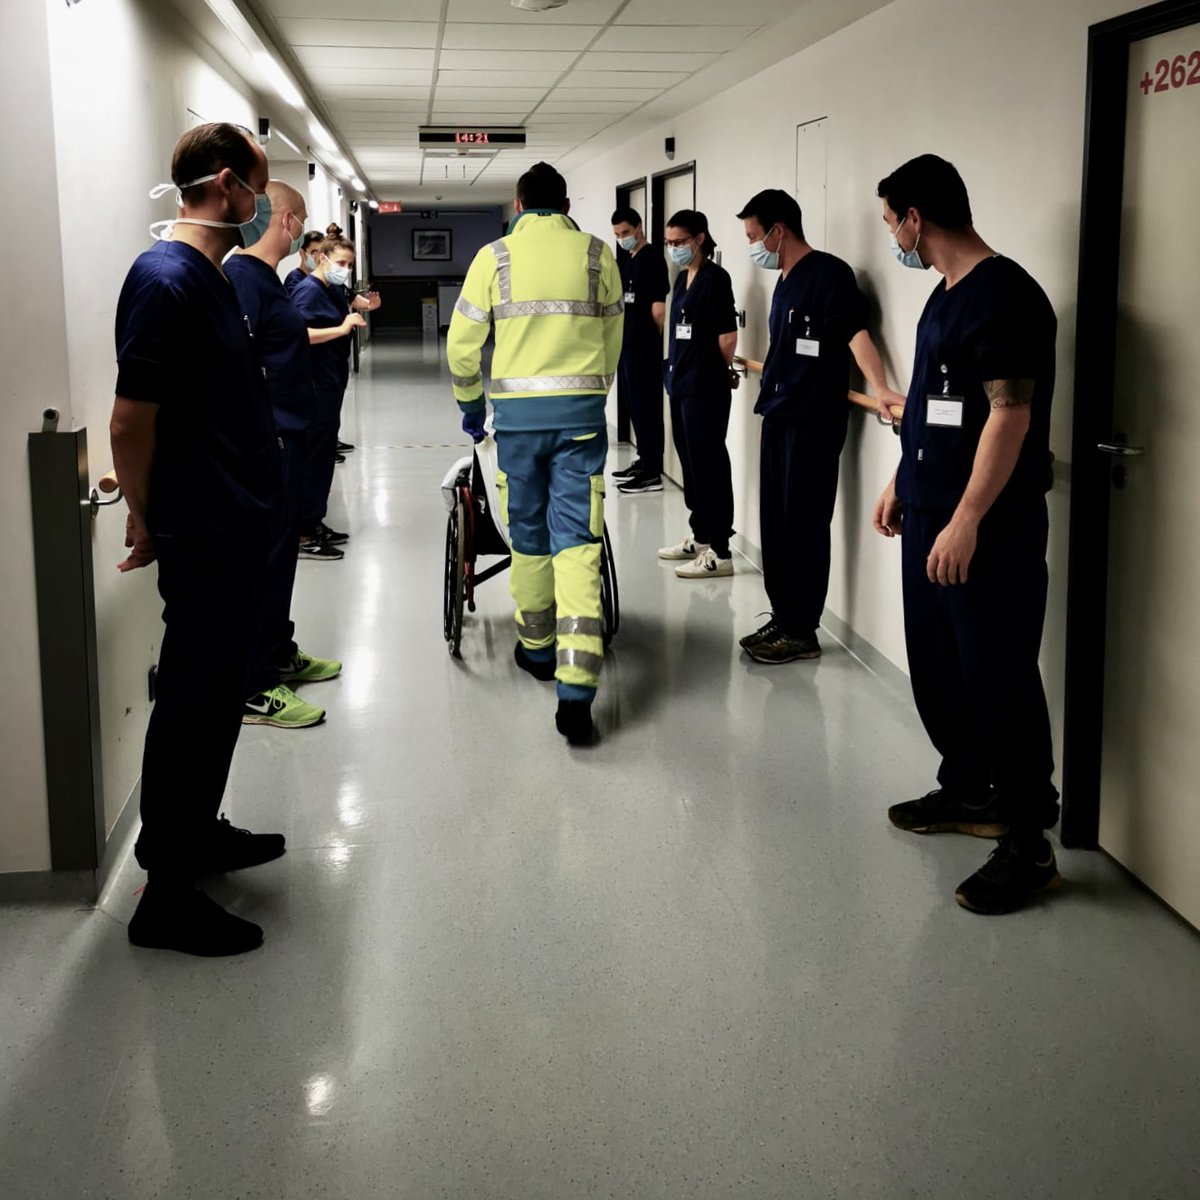 De allerlaatste COVID patiënt verlaat in IHC #Brussel de afdeling waar onze medewerkers gedurende drie weken het beste van zichzelf hebben gegeven. #congratulations #hardworkalwayspaysoff #COVID19BELDEF #samentegencorona #PlusFortsEnsemble #teamwork